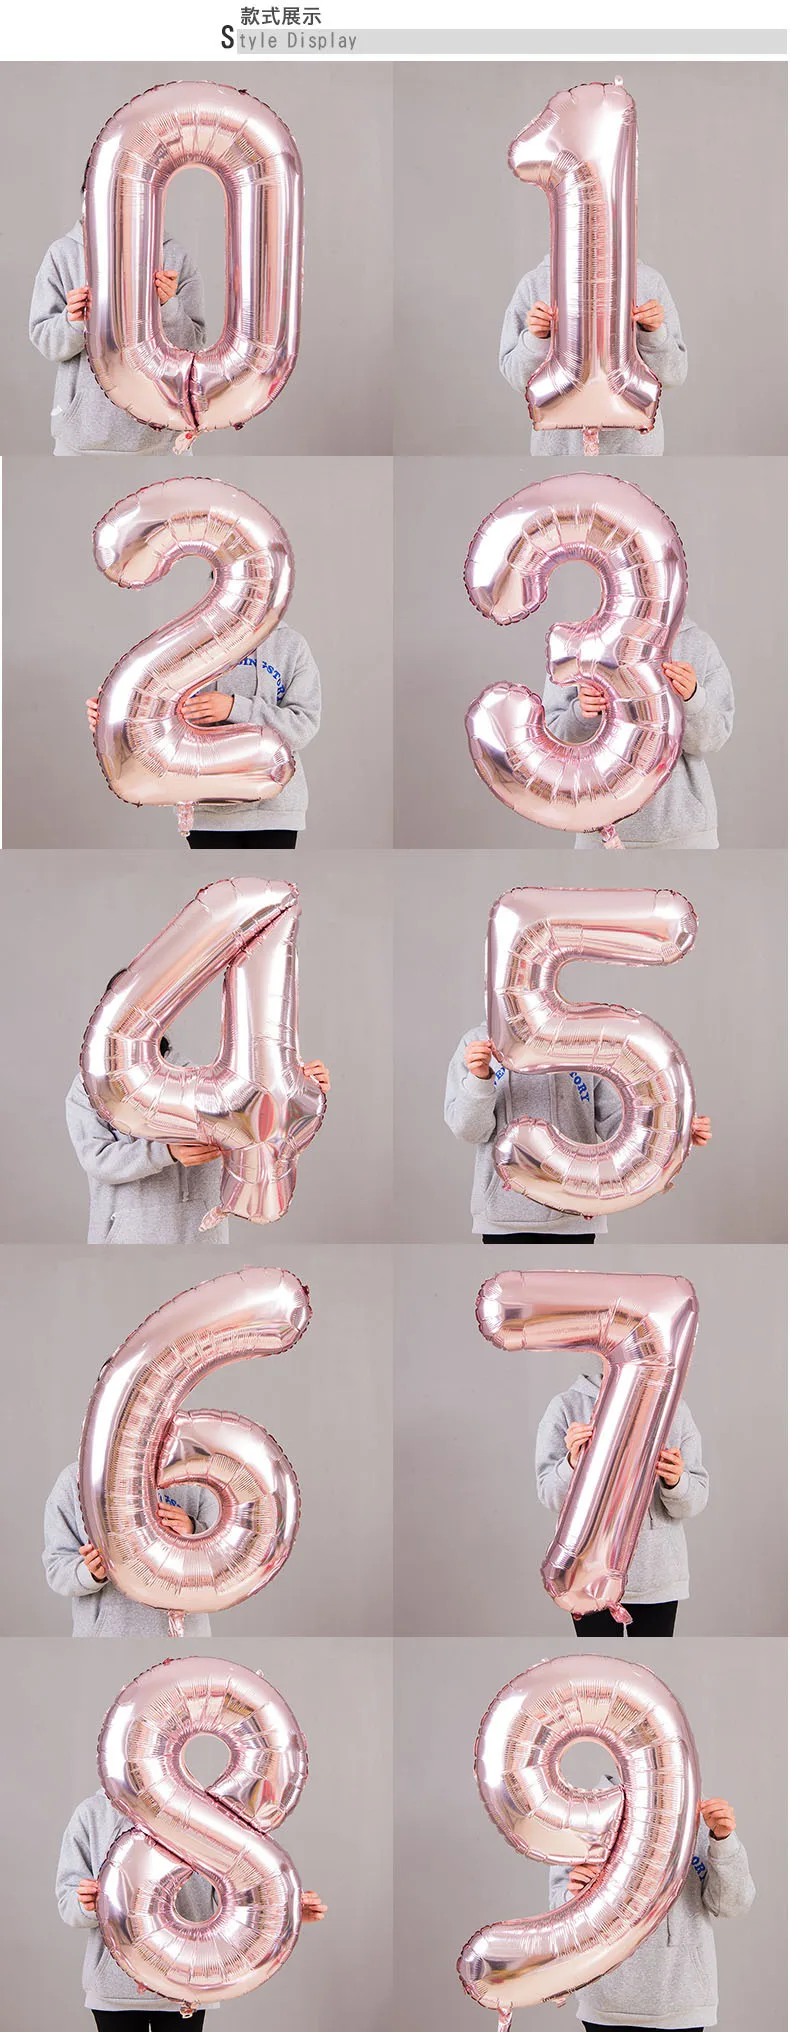 32 дюйма Количество воздушных шаров из розового золота воздушный шар из фольги 18th 30th День рождения украшения для взрослых и детей пользу/воздушные шары вечерние Supplise